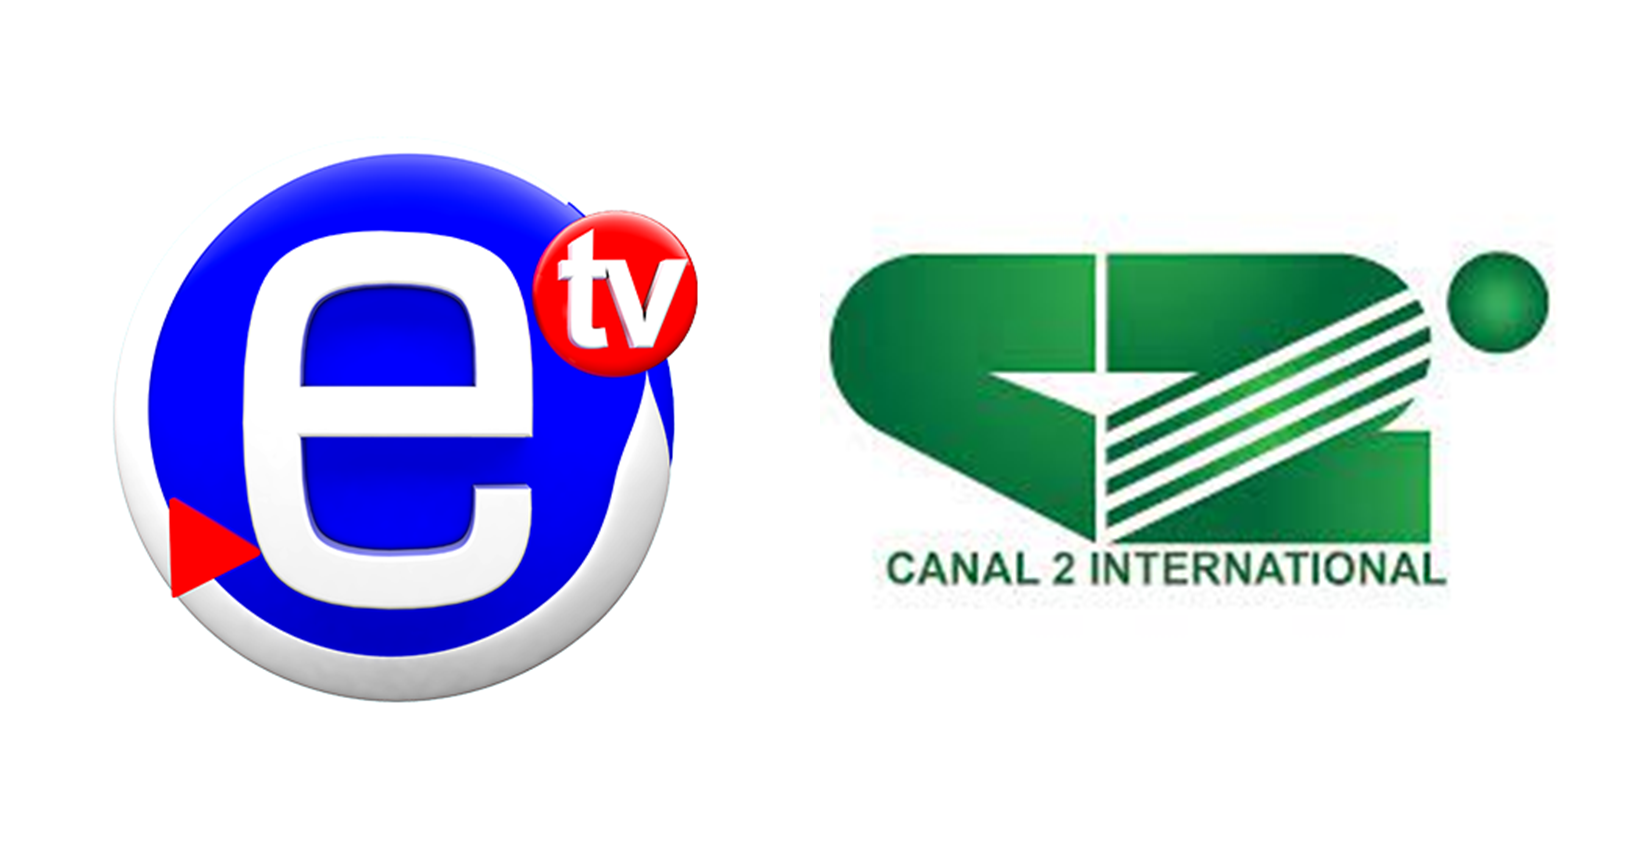 Équinoxe TV et Canal 2 sont les chaînes de télé les plus regardées au Cameroun en 2021 selon l’institut international Kantar